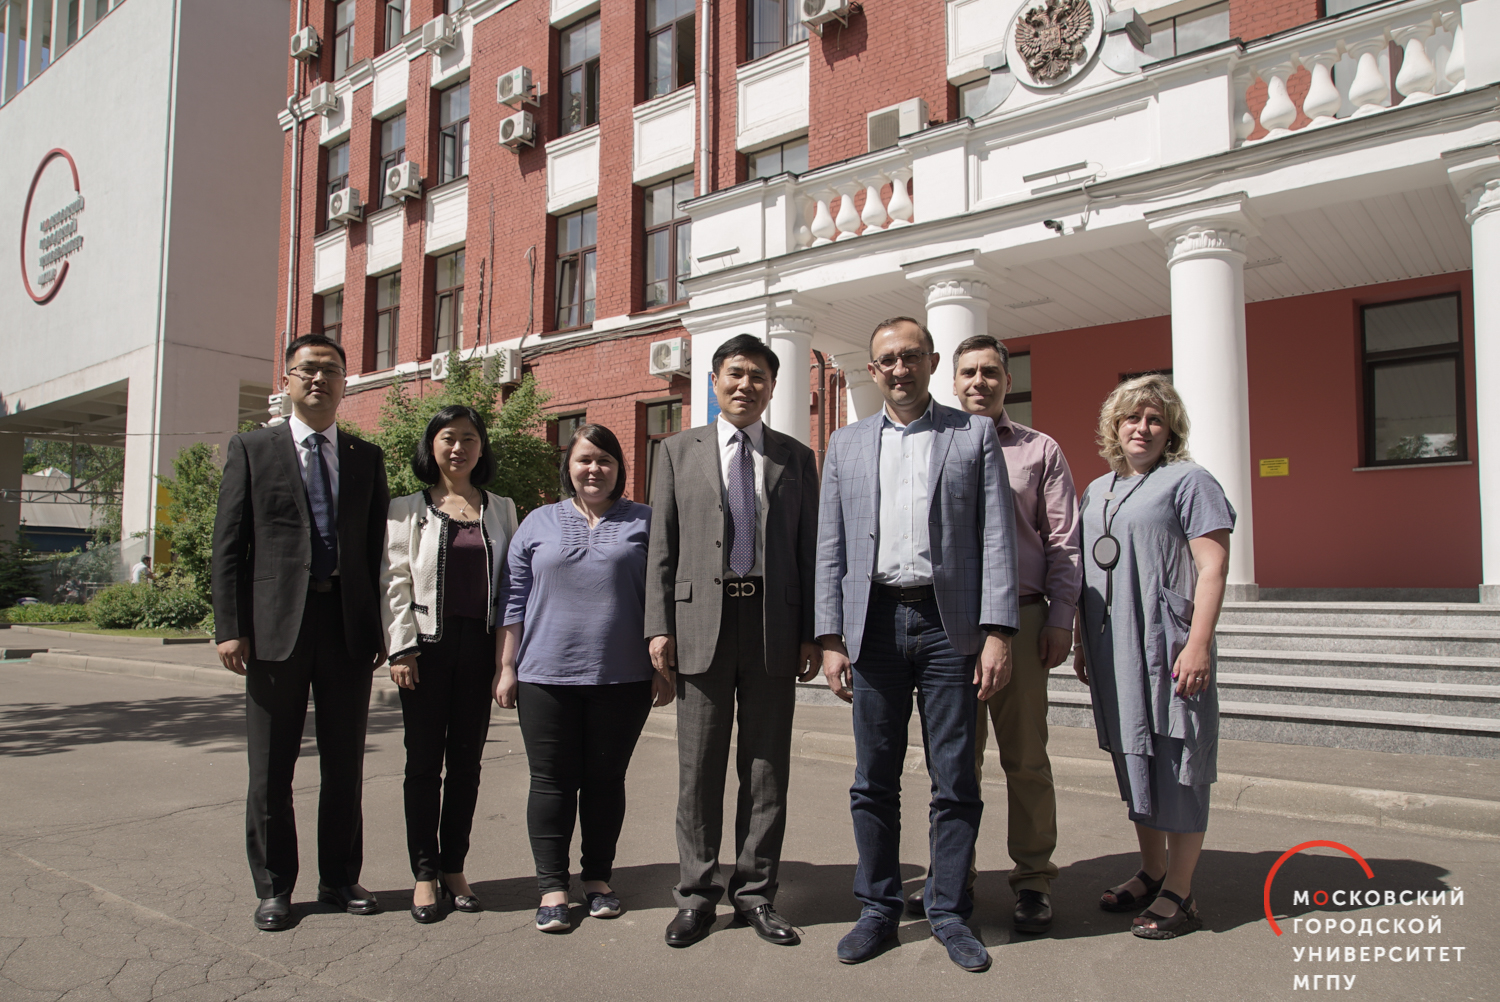 安徽大学是莫斯科市立大学（MCU）的新合作伙伴